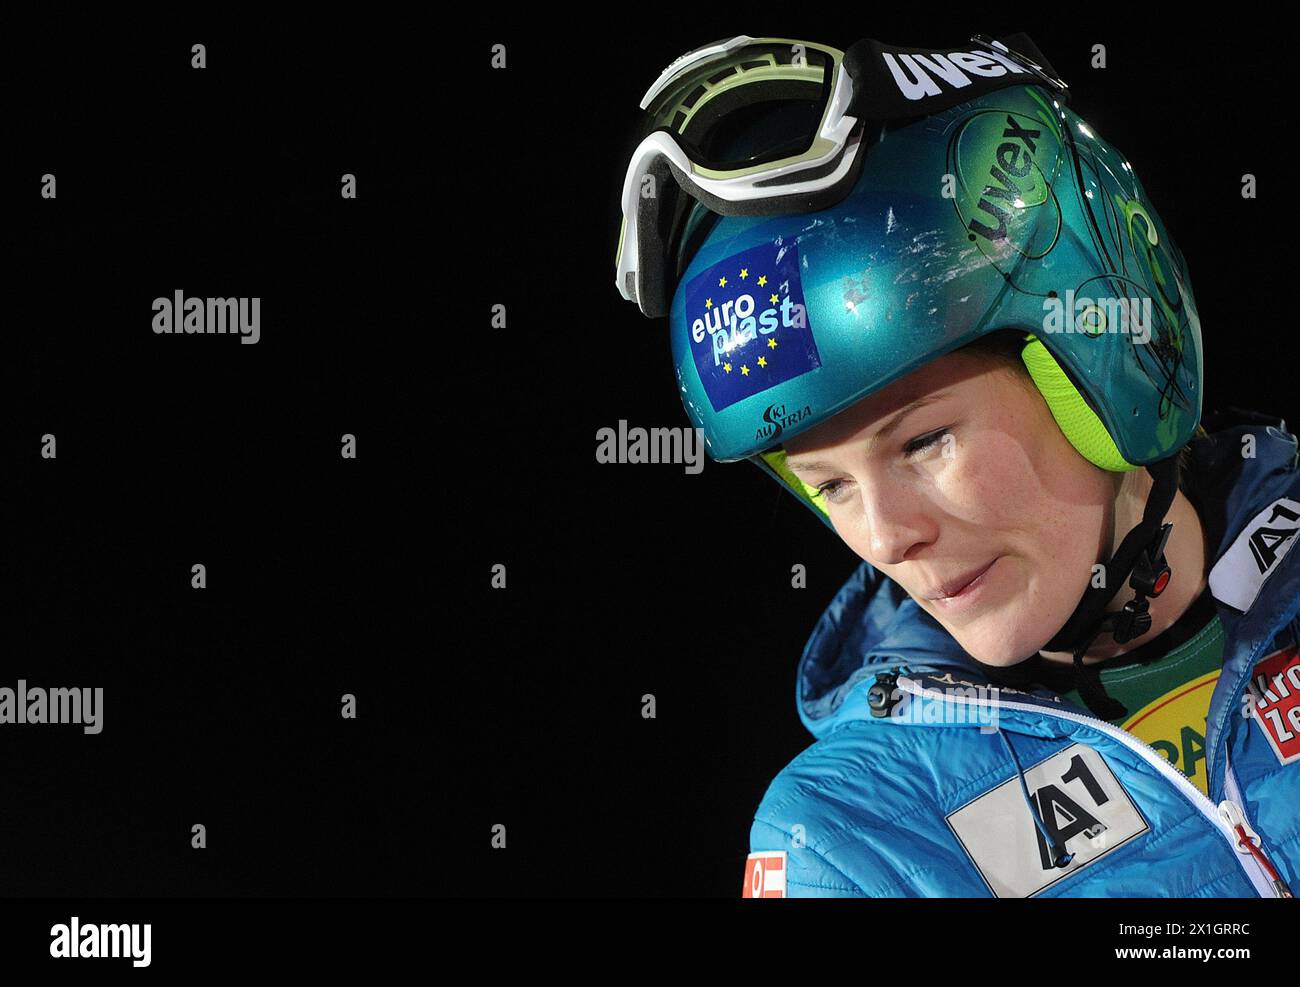 Carmen Thalmann (AUT) durante il Parallelslalom, evento a squadre della Coppa del mondo di Sci Alpino FIS a Patscherkofel, Innsbruck, Austria, il 2014/02/25. - 20140225_PD3265 - Rechteinfo: Diritti gestiti (RM) Foto Stock